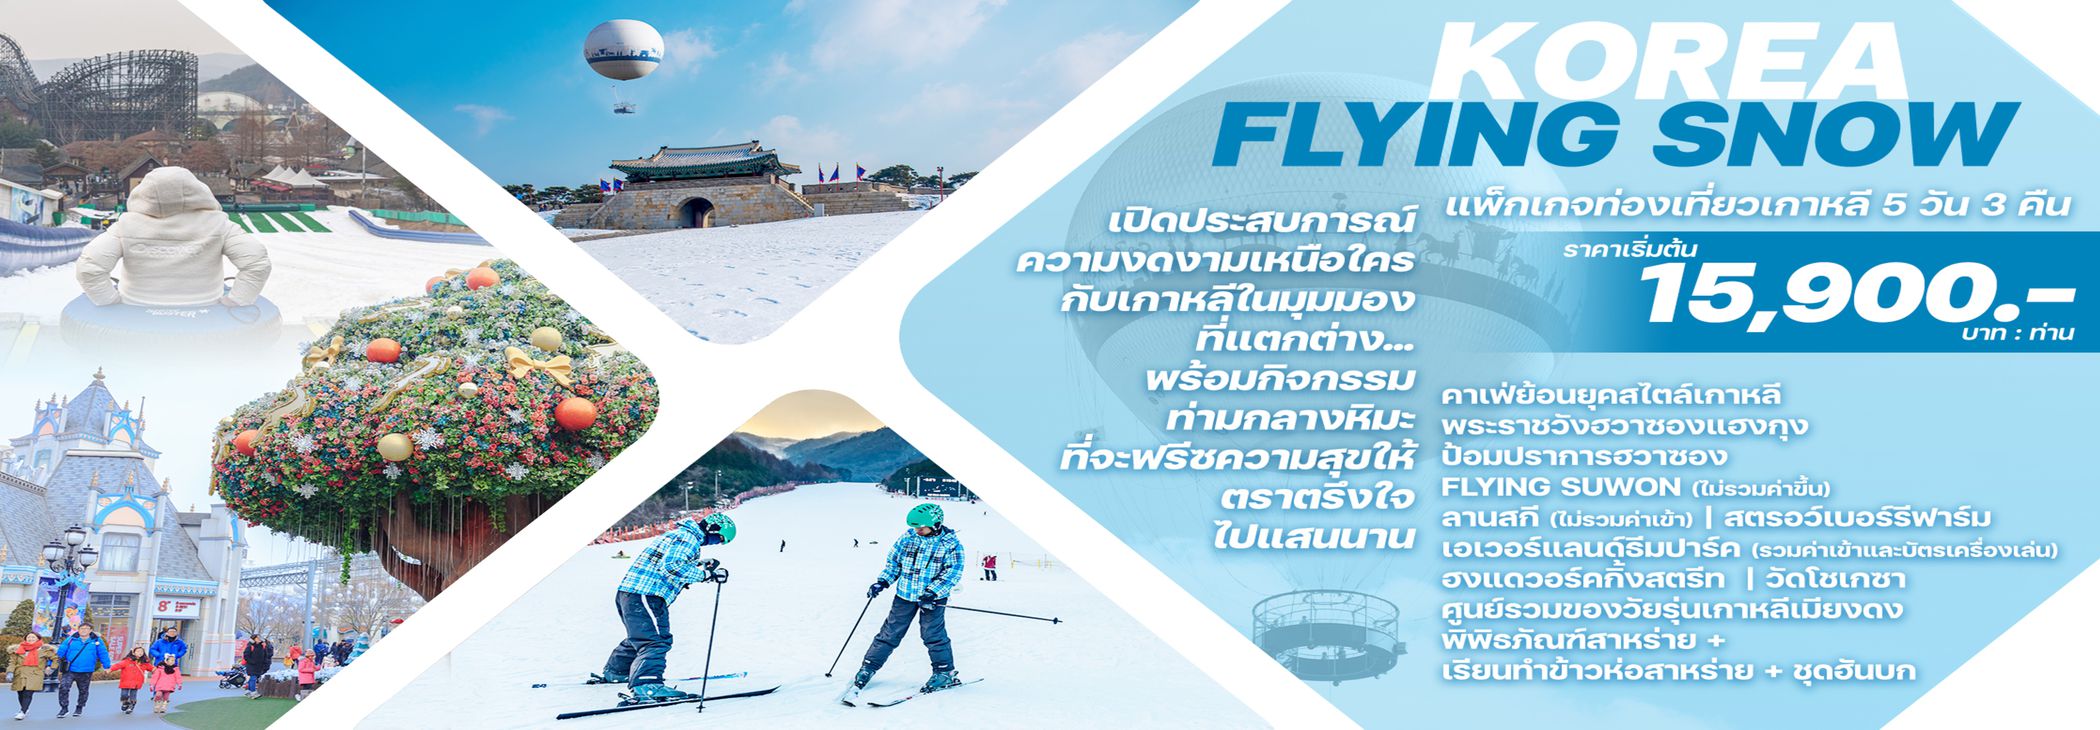 ทัวร์เกาหลี KOREA FLYING SNOW